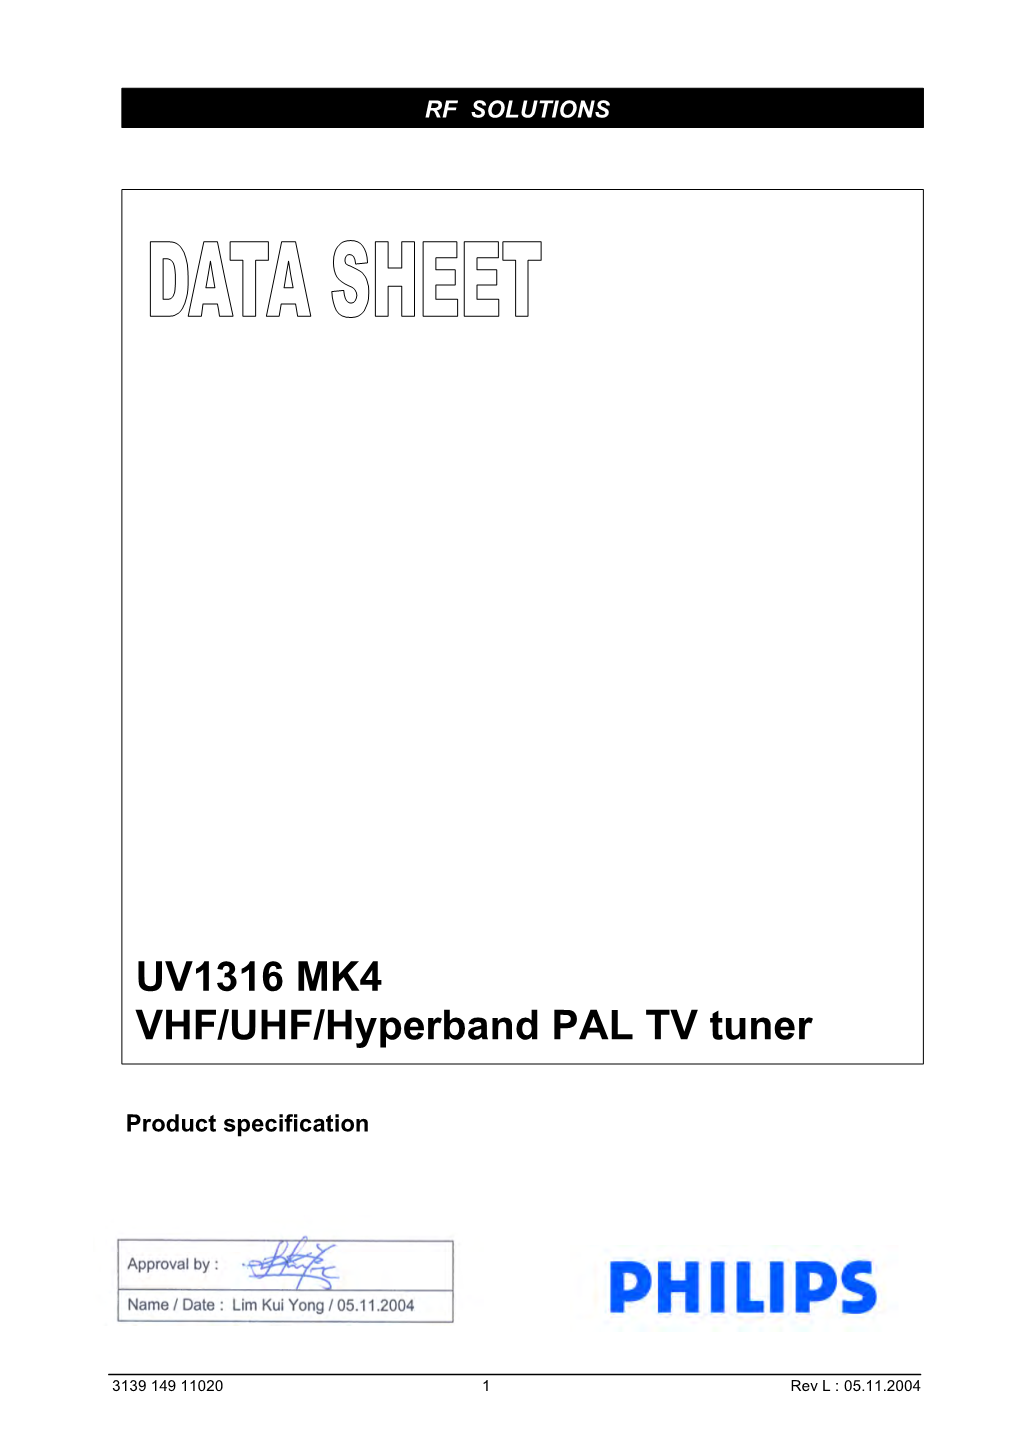 UV1316 MK4 VHF/UHF/Hyperband PAL TV Tuner